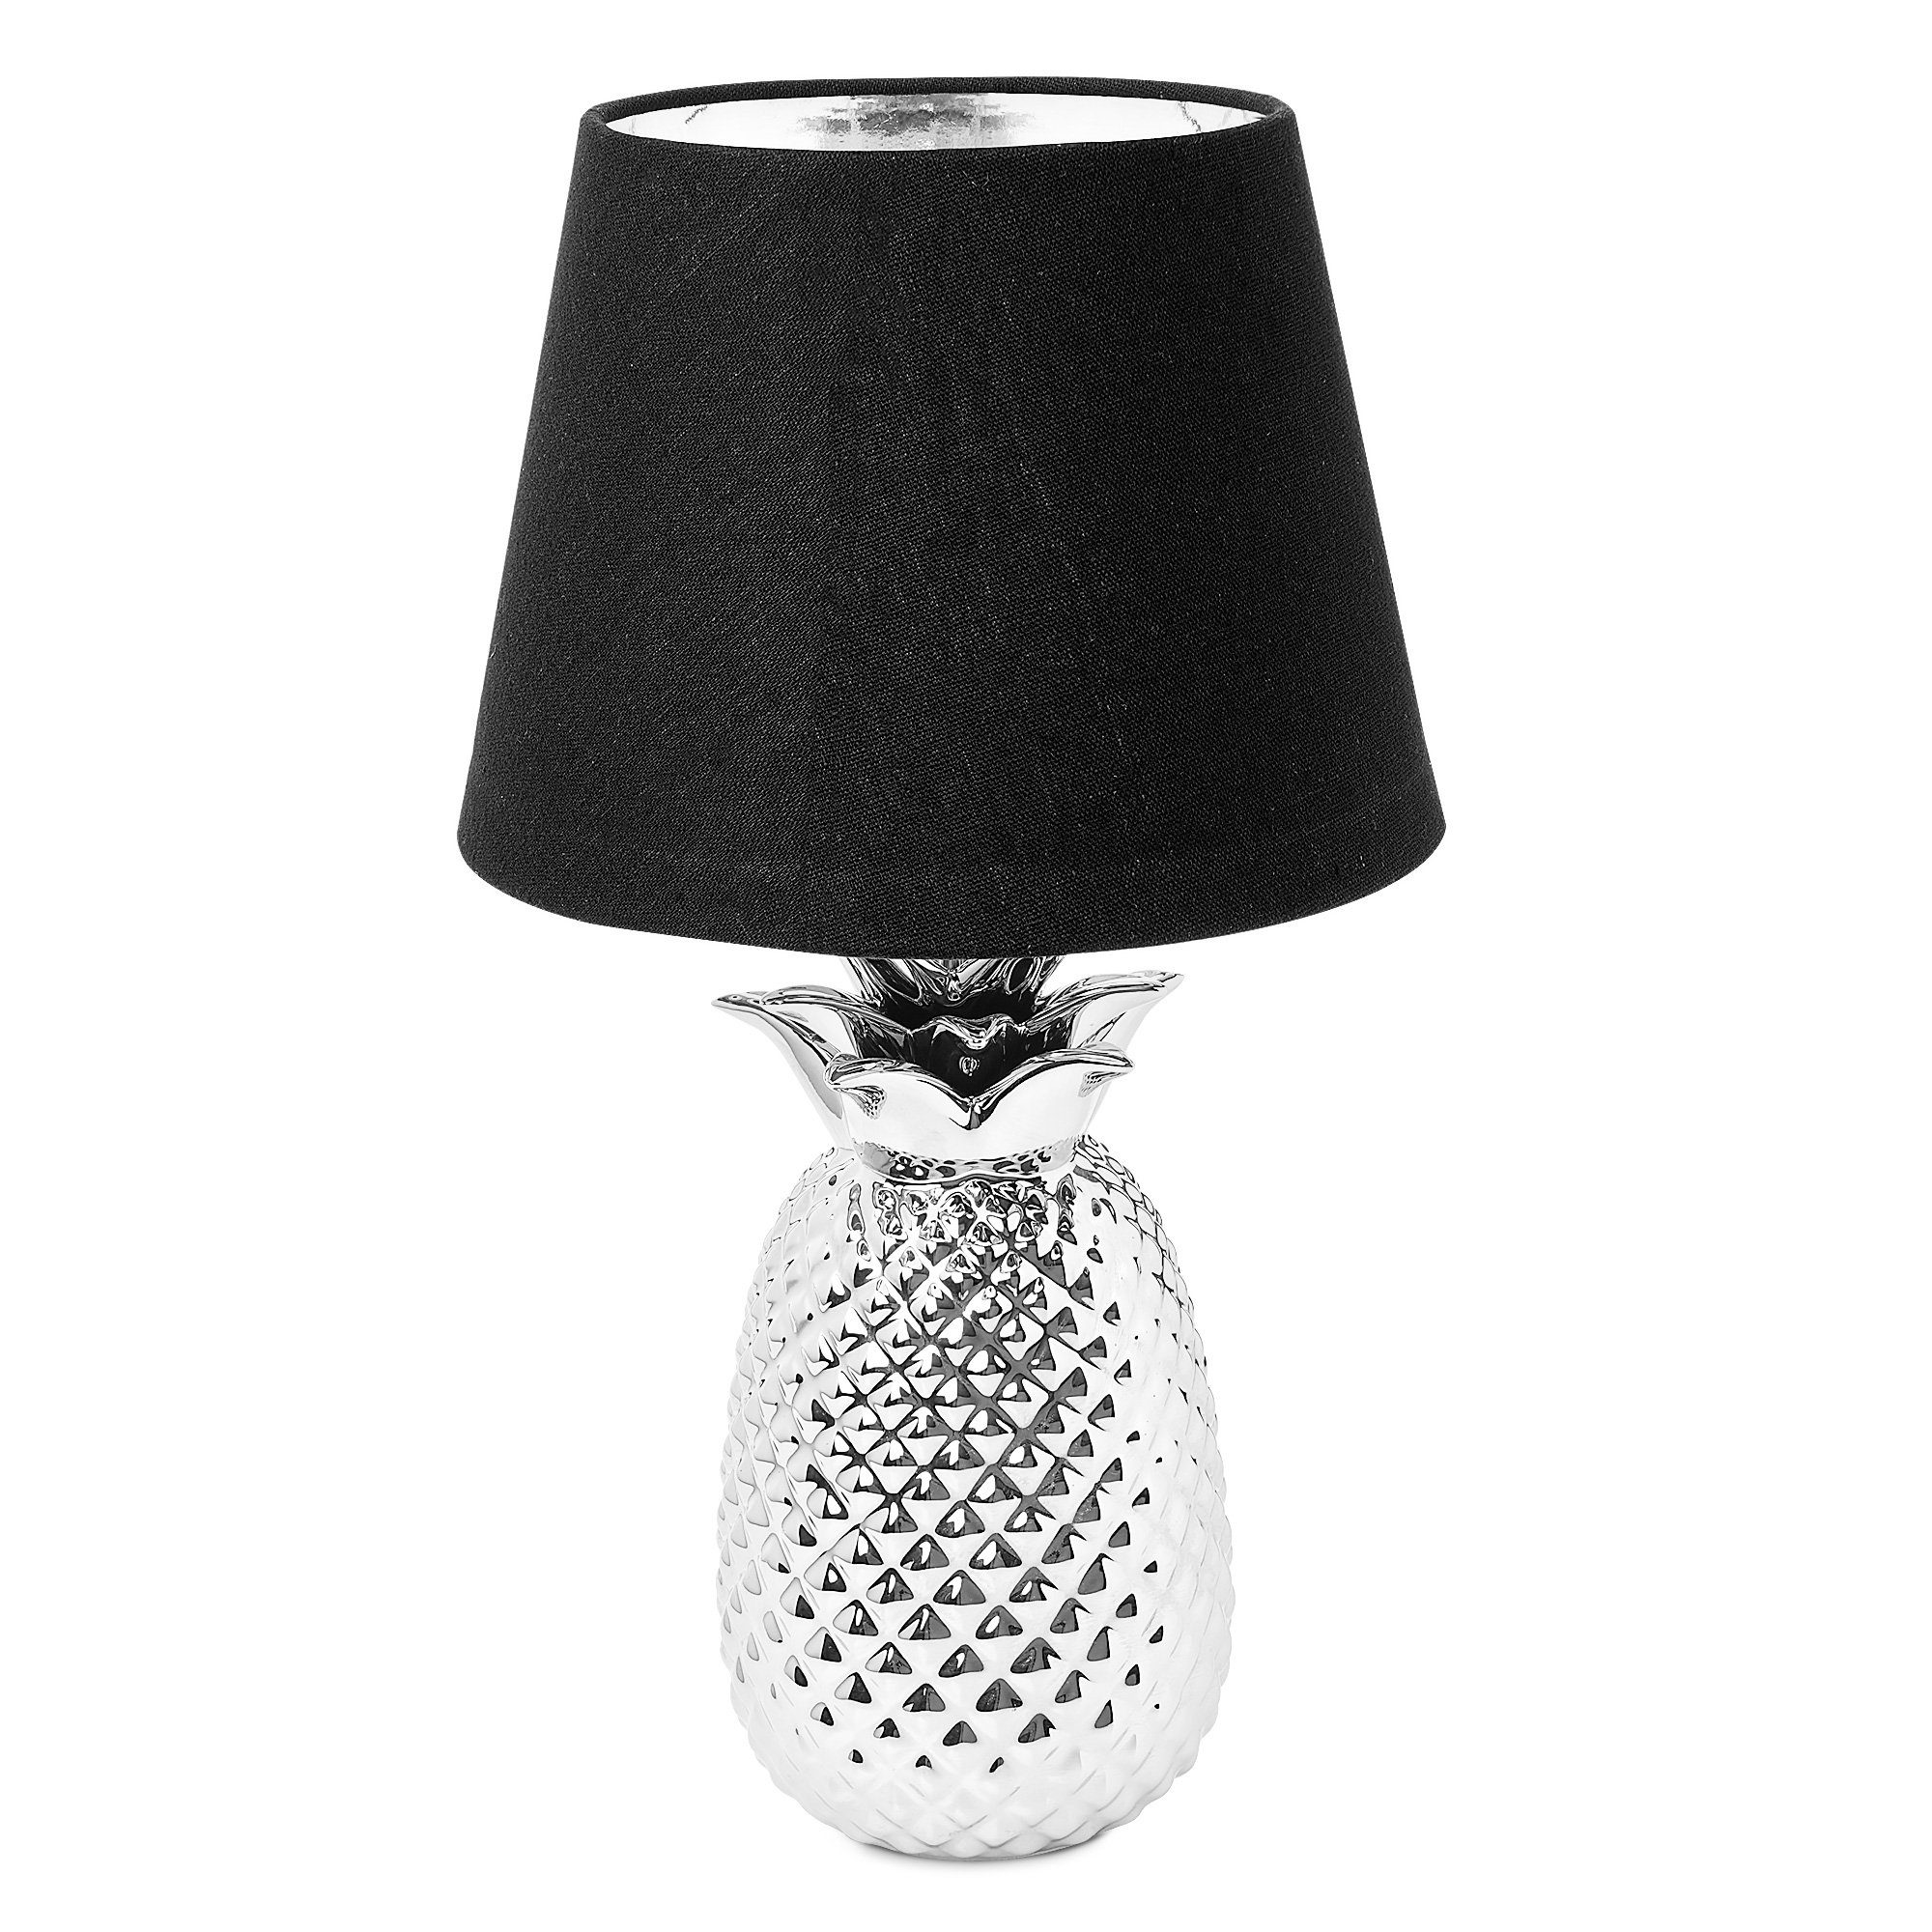 Navaris Tischleuchte, Tischlampe im Ananas Design - 40cm hoch - Deko  Keramik Lampe für Nachttisch oder Beistelltisch - Dekolampe mit E27 Gewinde  online kaufen | OTTO